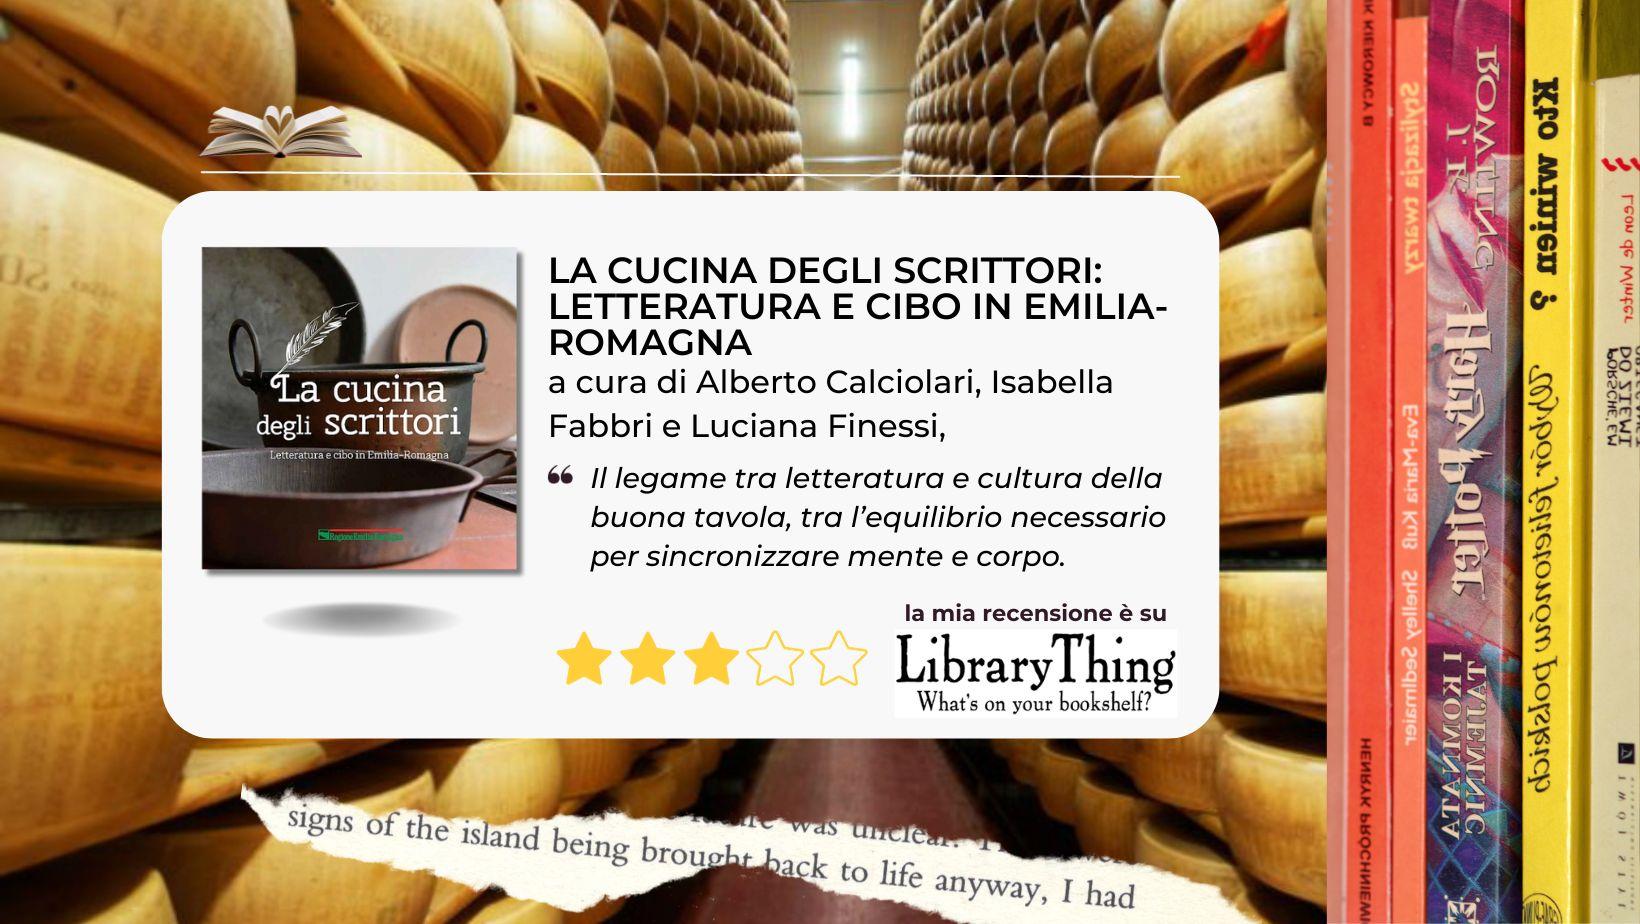 “La cucina degli scrittori: letteratura e cibo in Emilia-Romagna” un libro che accende conoscenza ed appetito